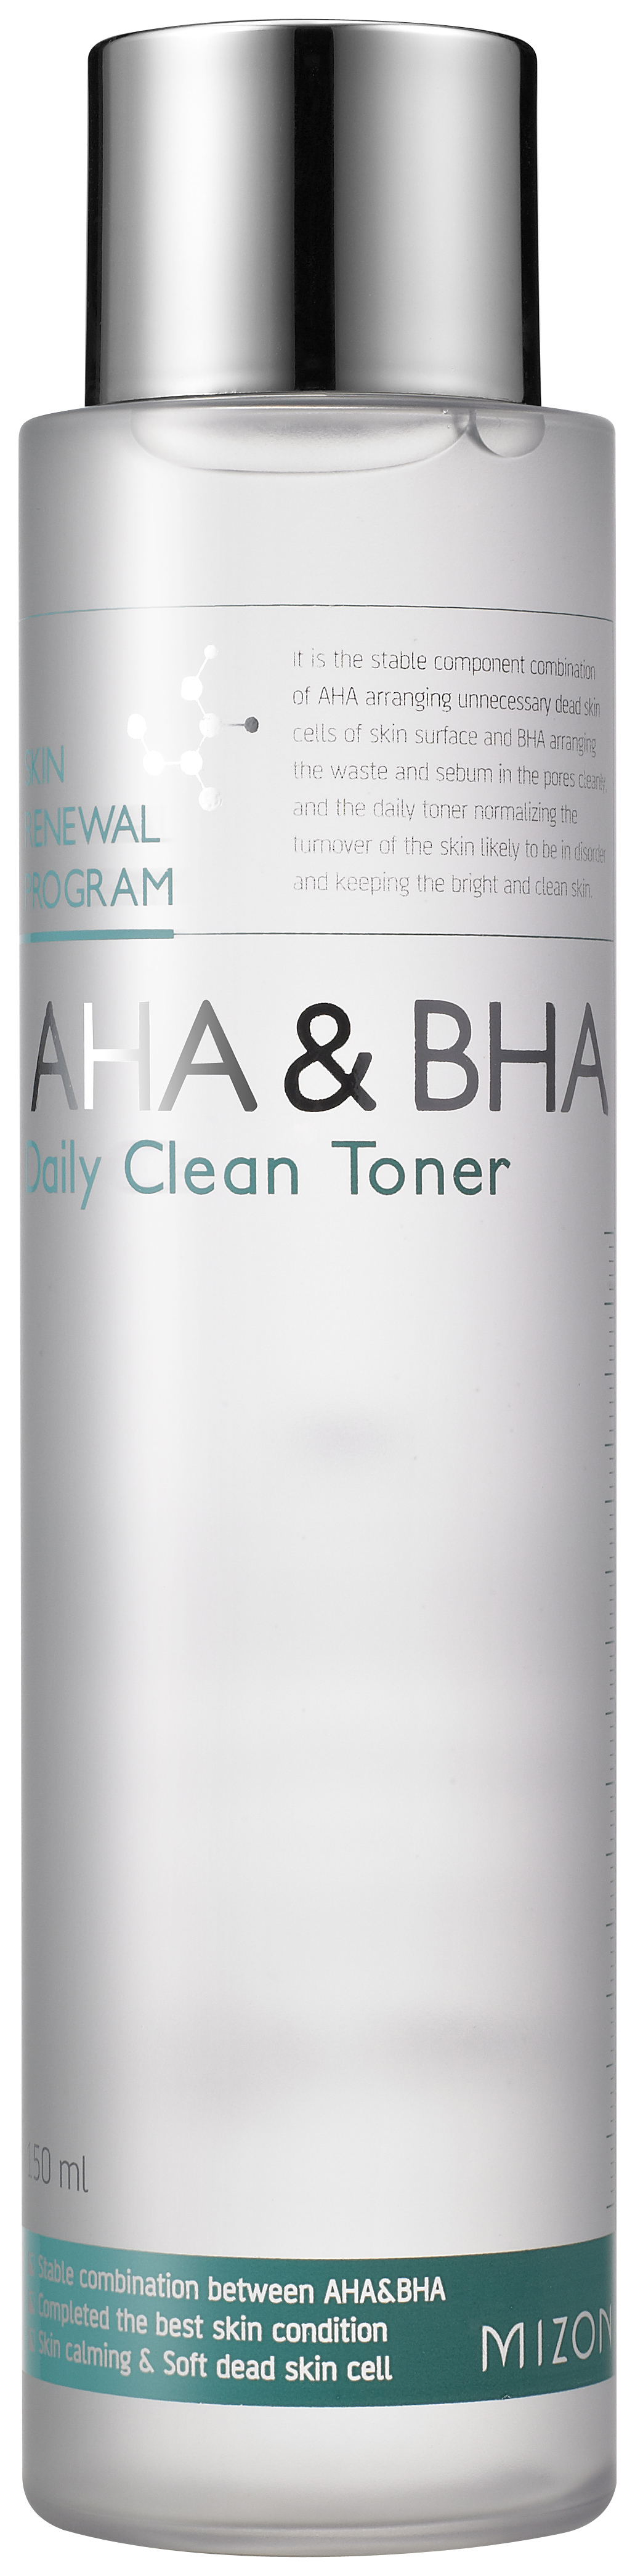 Купить Тоник для лица Mizon AHA & BHA Daily Clean Toner 150 мл